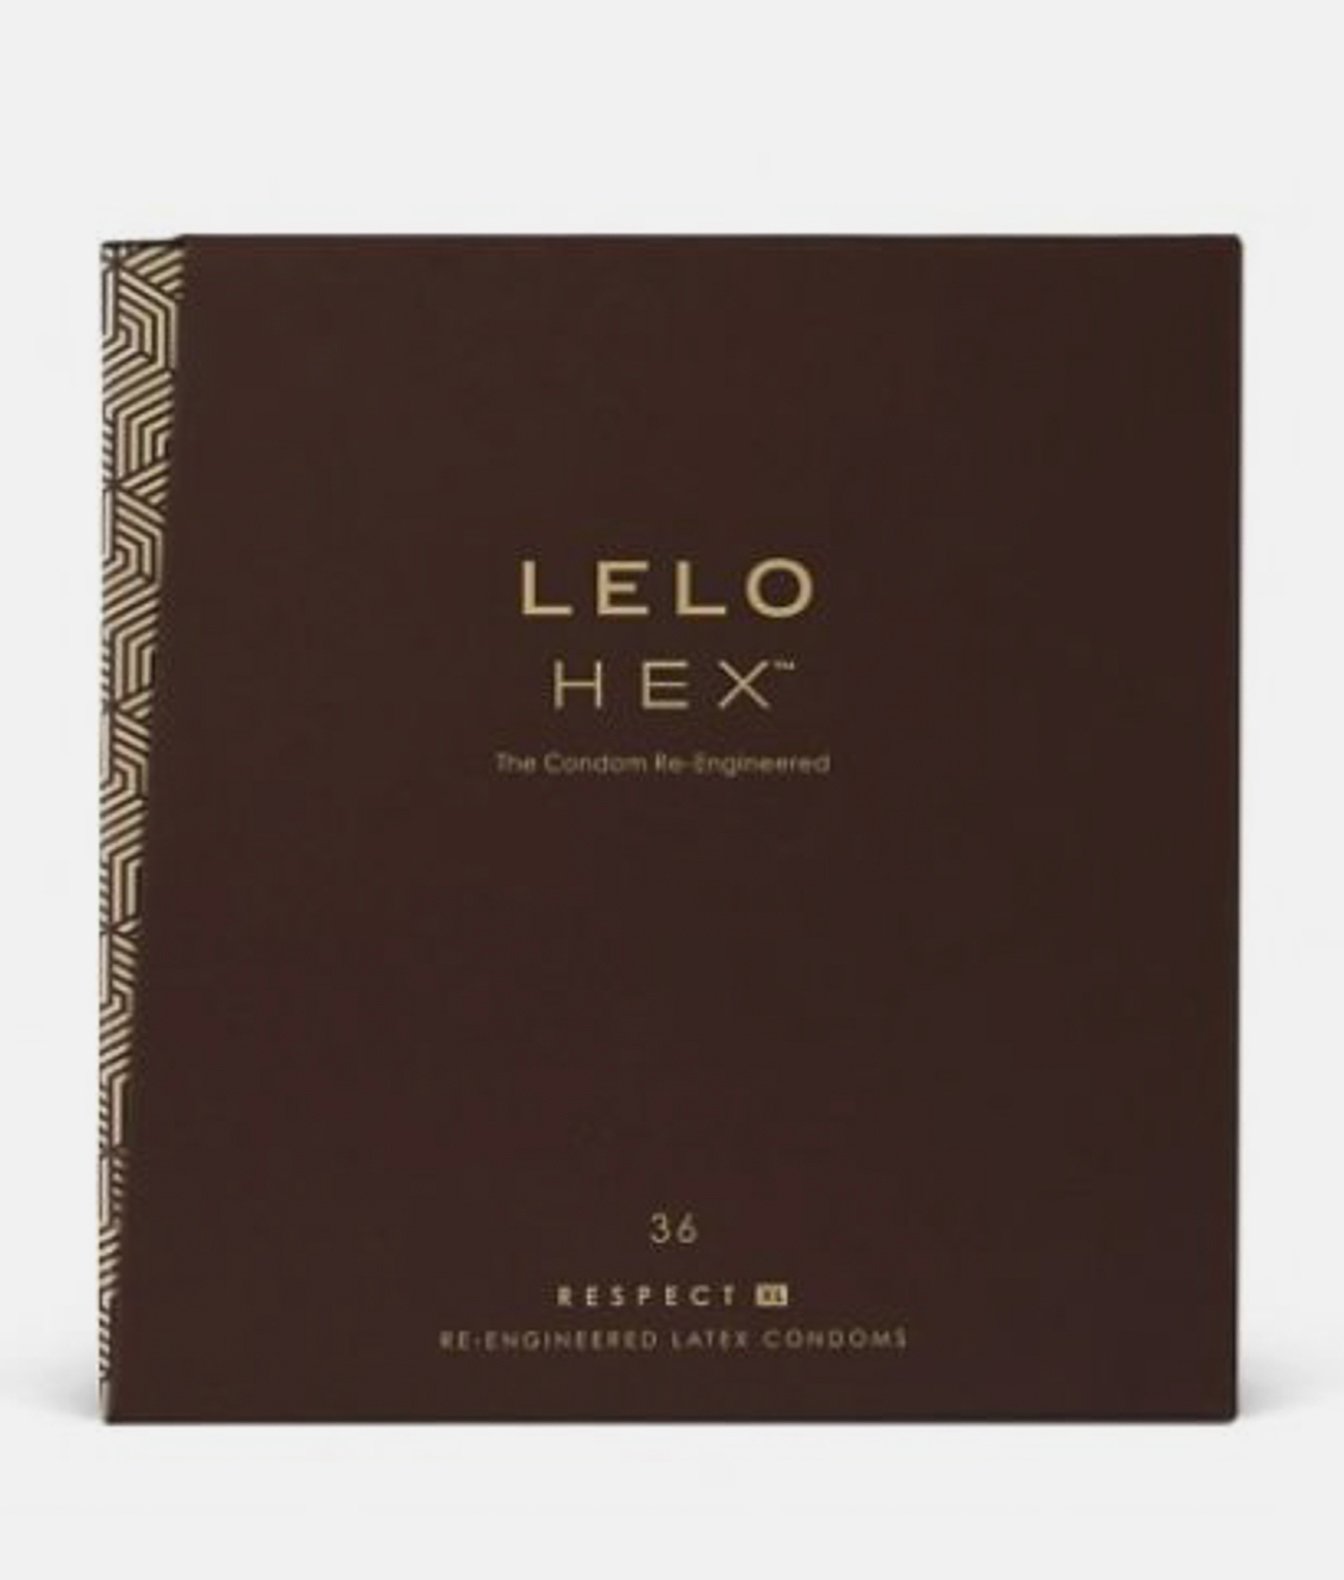 LELO HEX Respect XL prezerwatywy lateksowe 